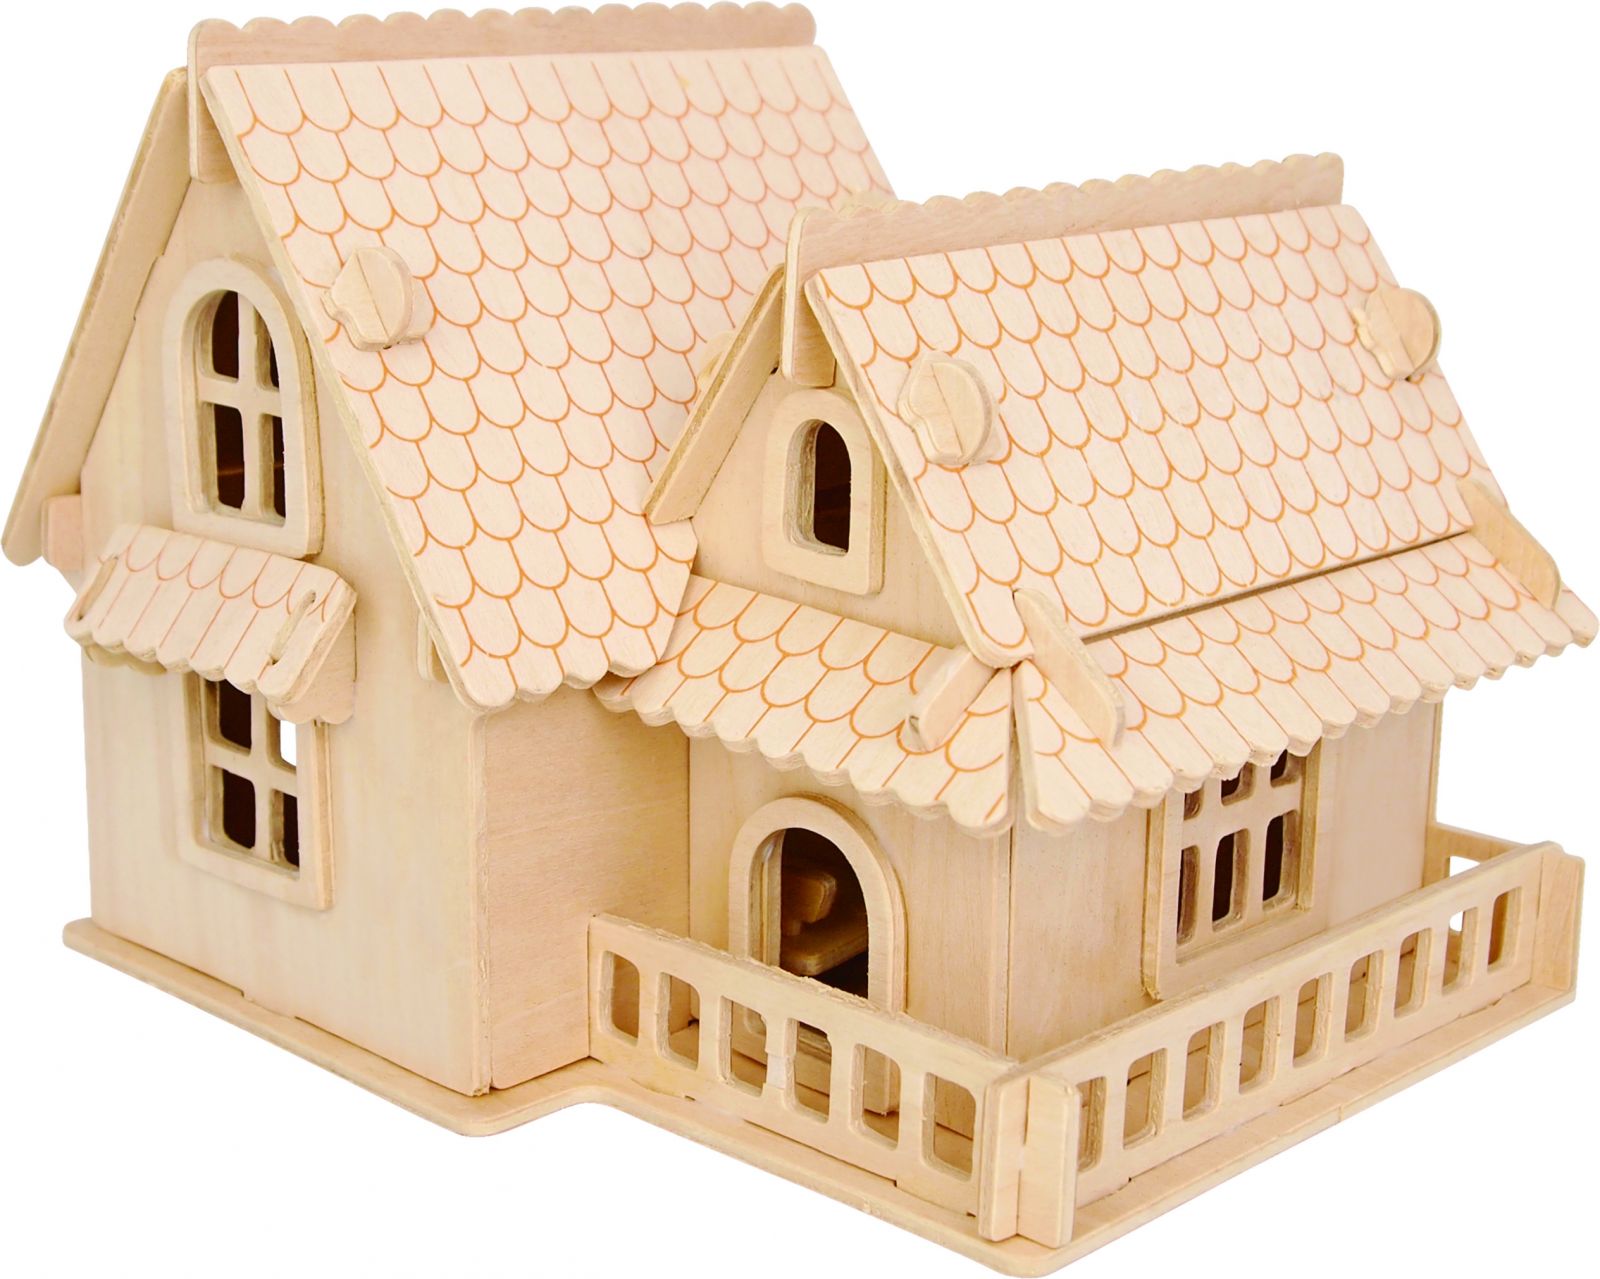 Dřevěné hračky Woodcraft Dřevěné 3D puzzle Evropská vila A Woodcraft construction kit